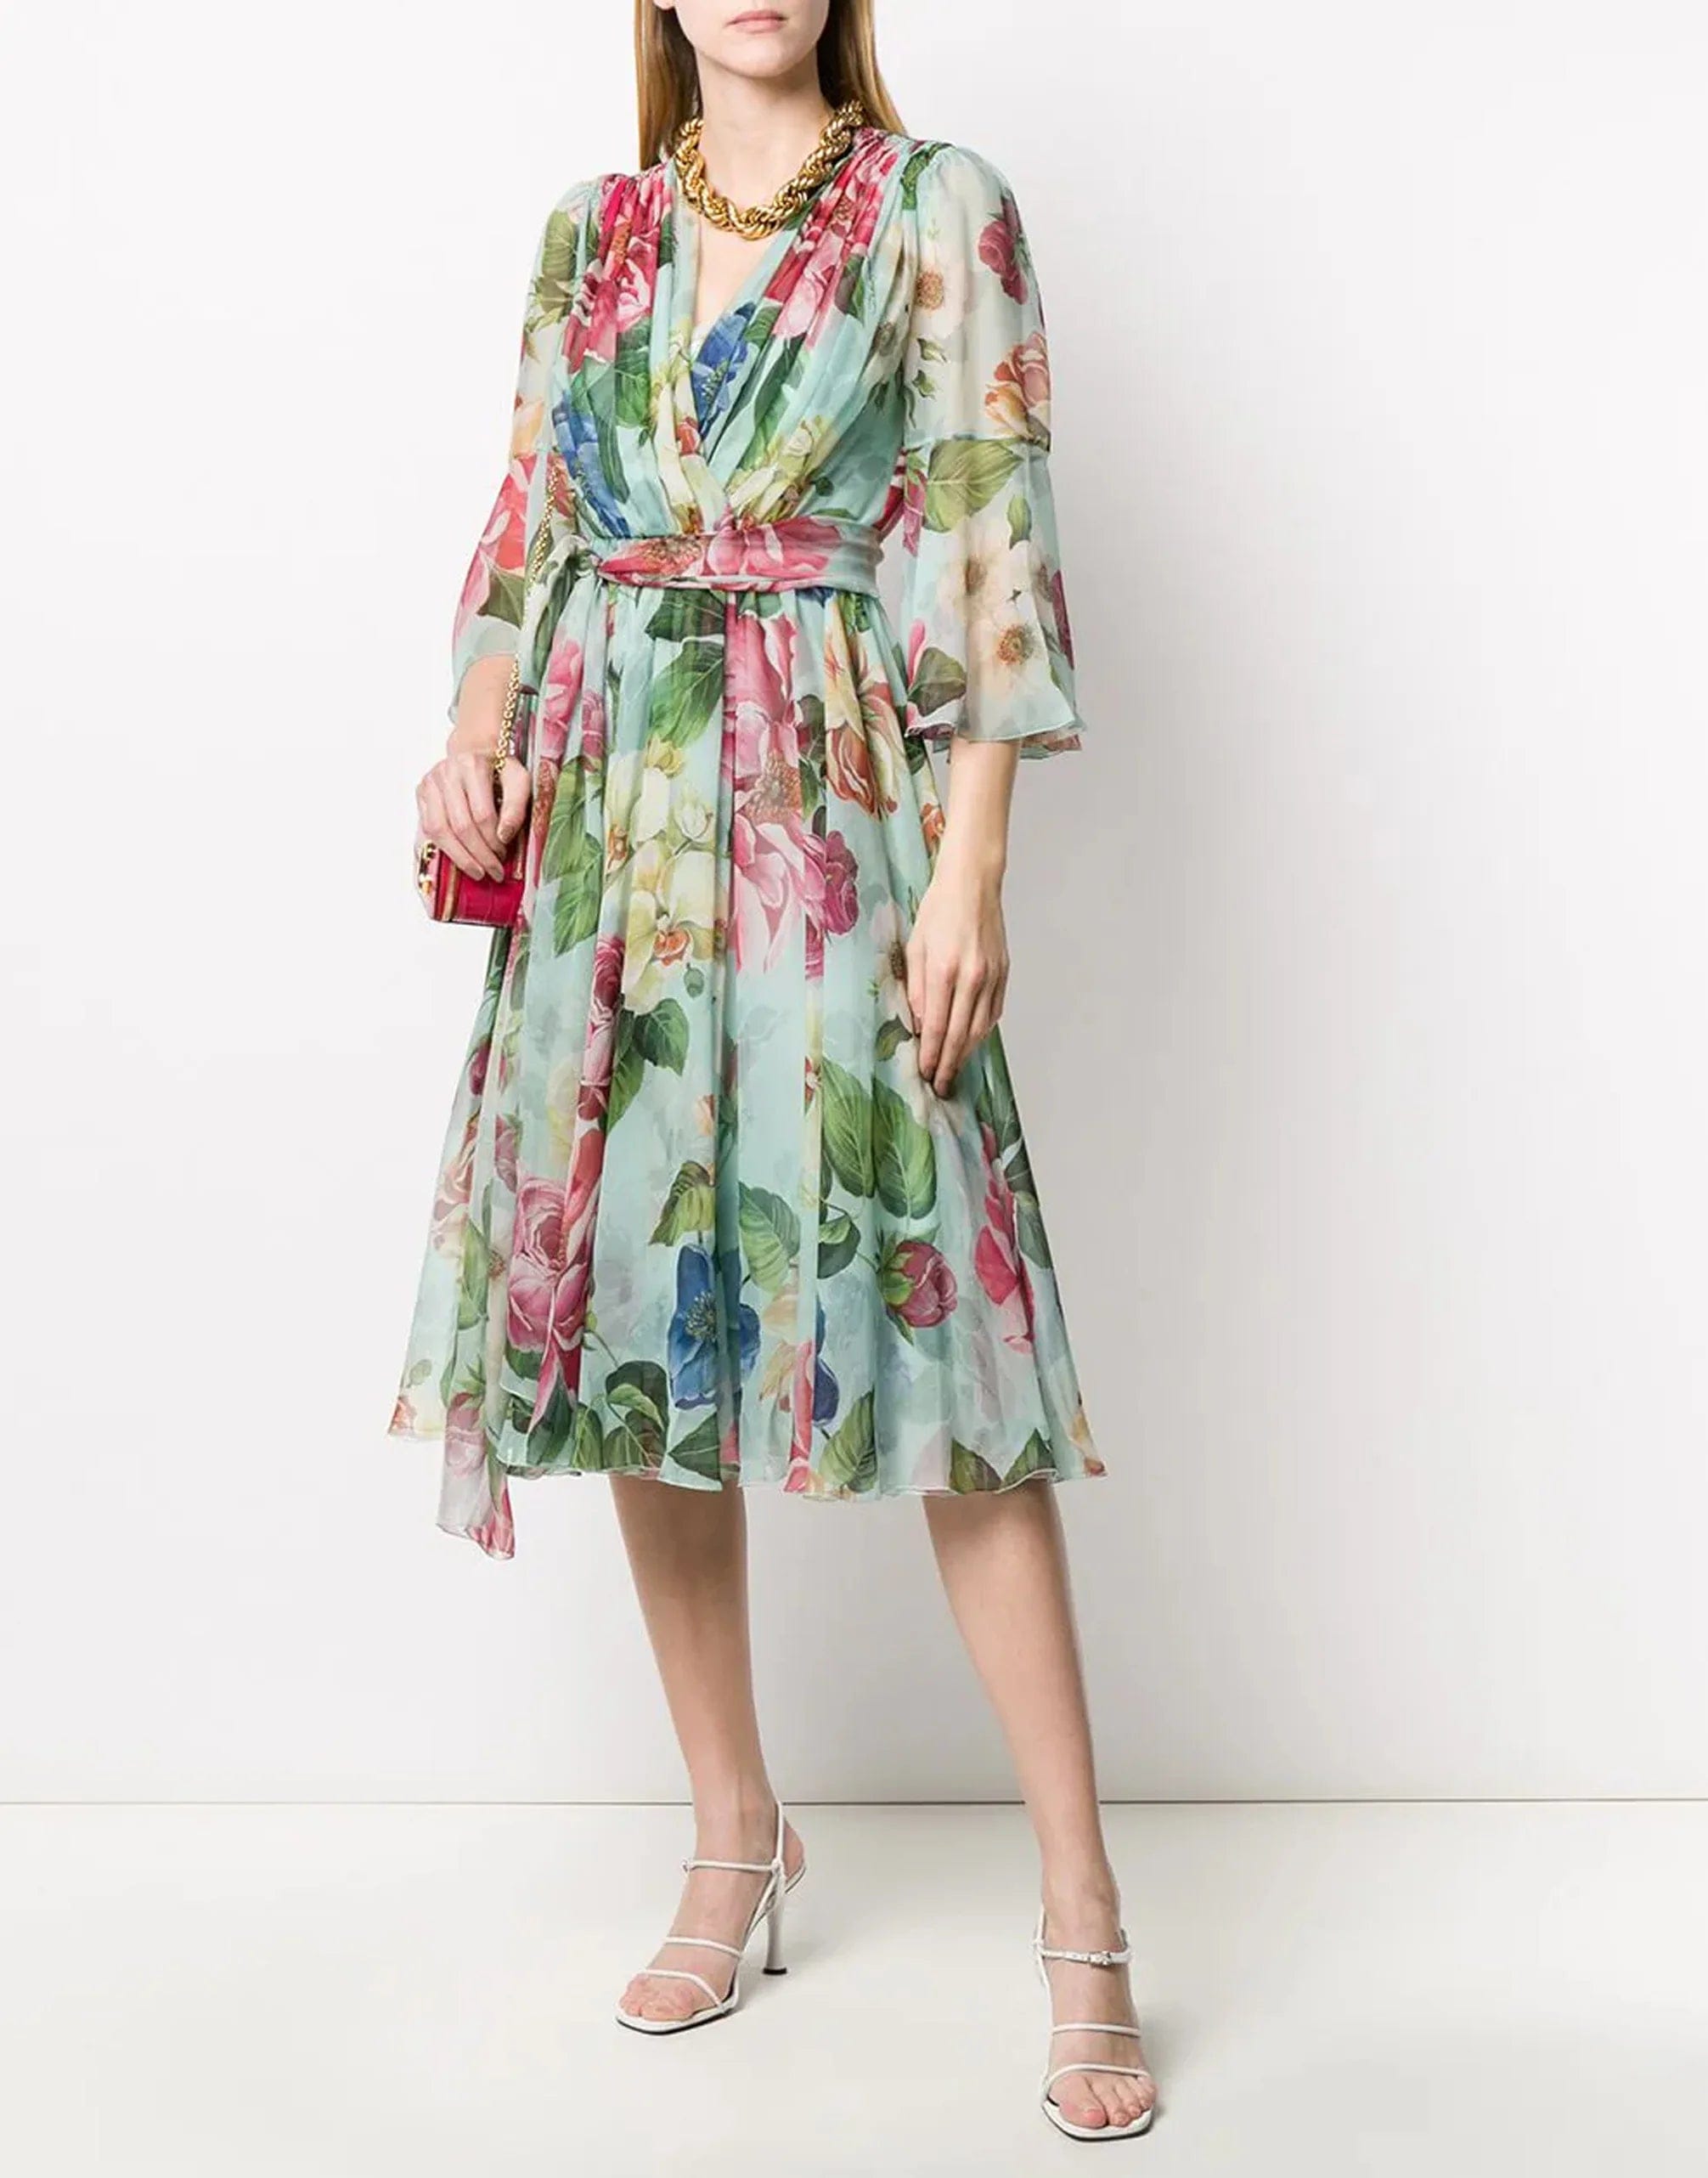 Dolce & Gabbana Blumendruck ausgestattetes Kleid2